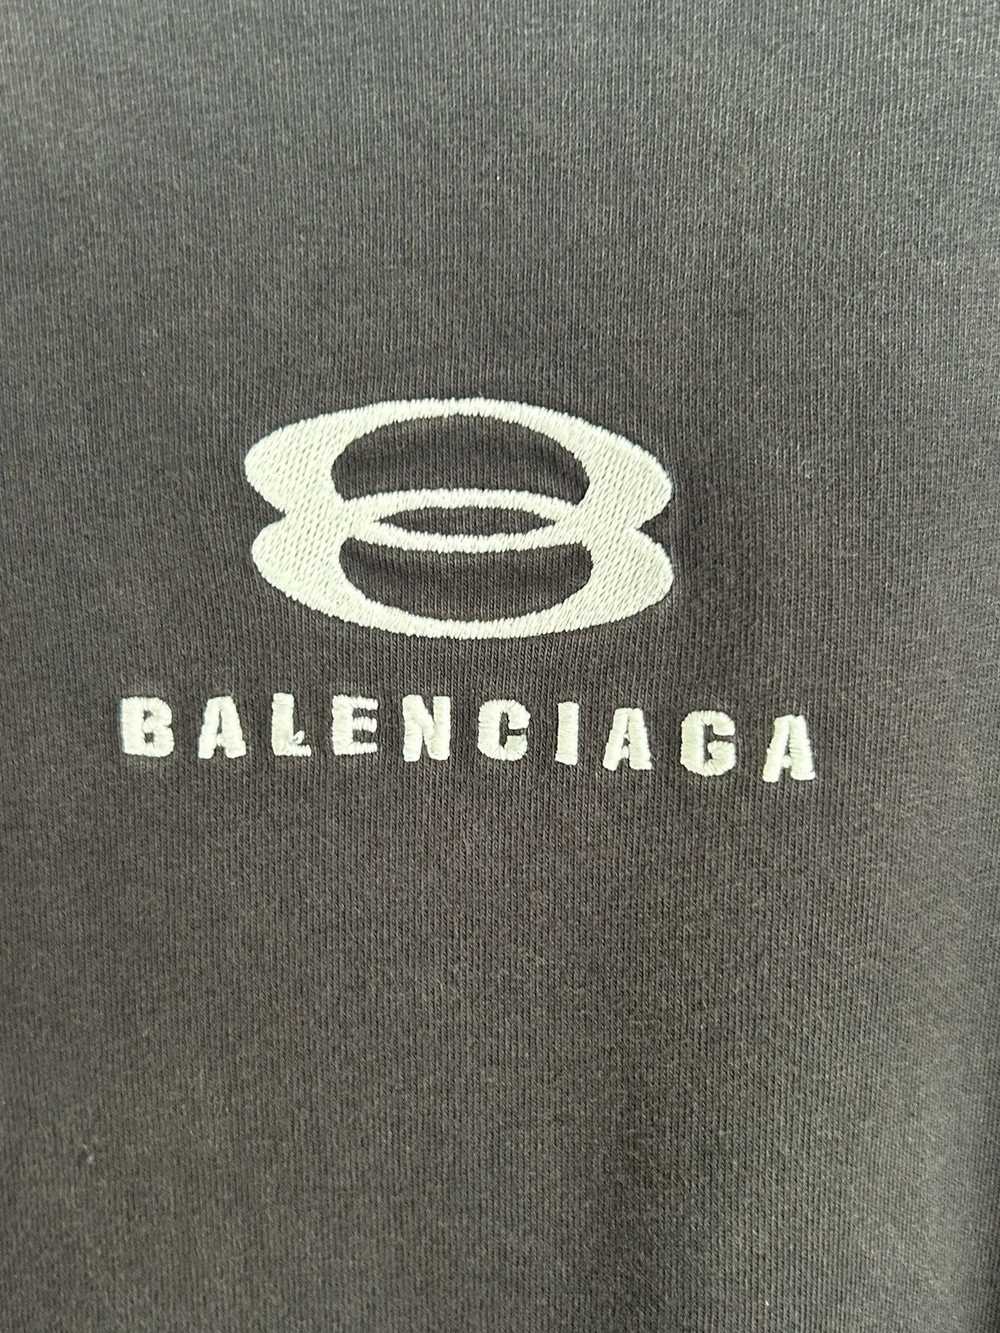 Balenciaga Balenciaga unity sport tee - image 2